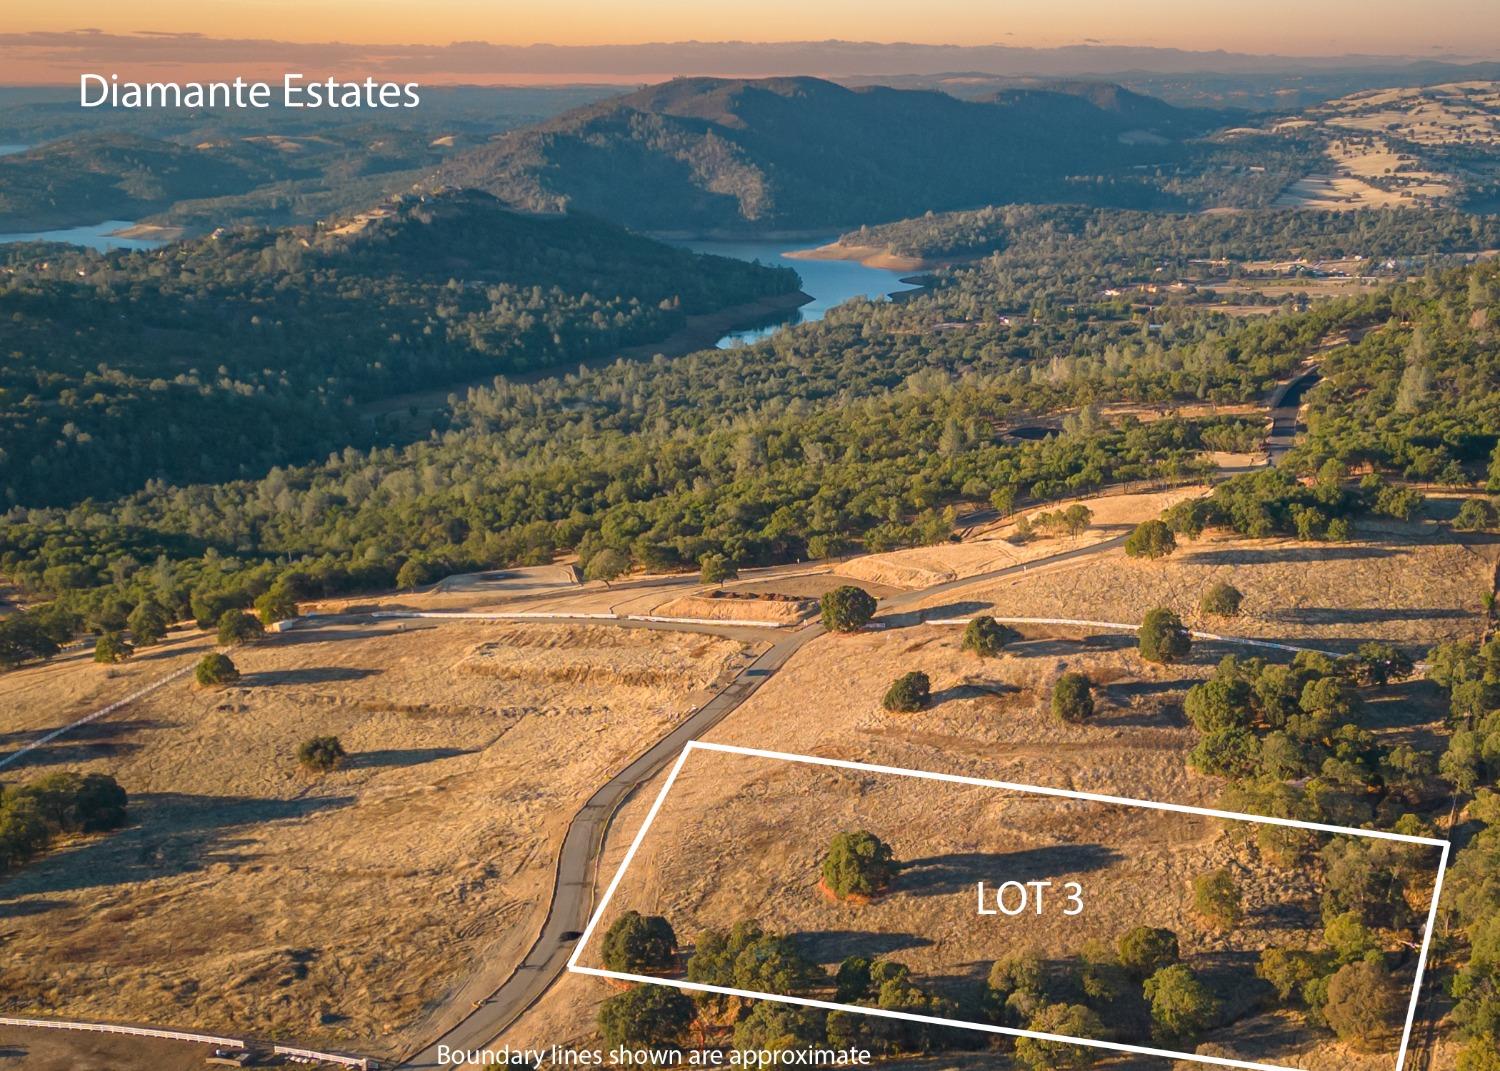 Photo of 2025-LOT 3 Via Veritas in El Dorado Hills, CA